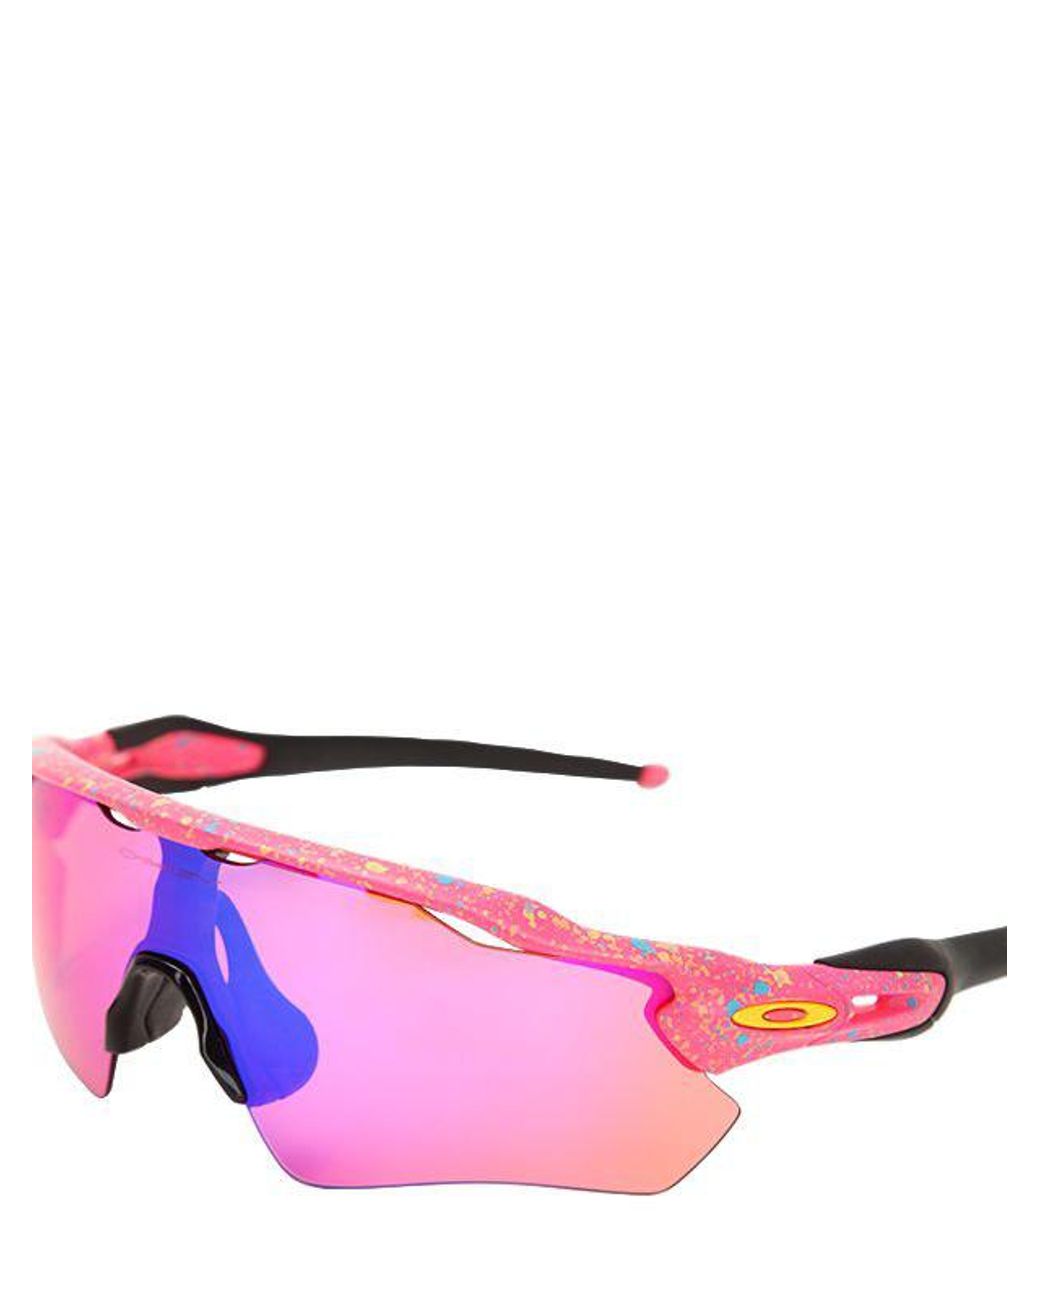 Oakley Radar Ev Path Limited Edition Sunglasses in Pink | Lyst Canada